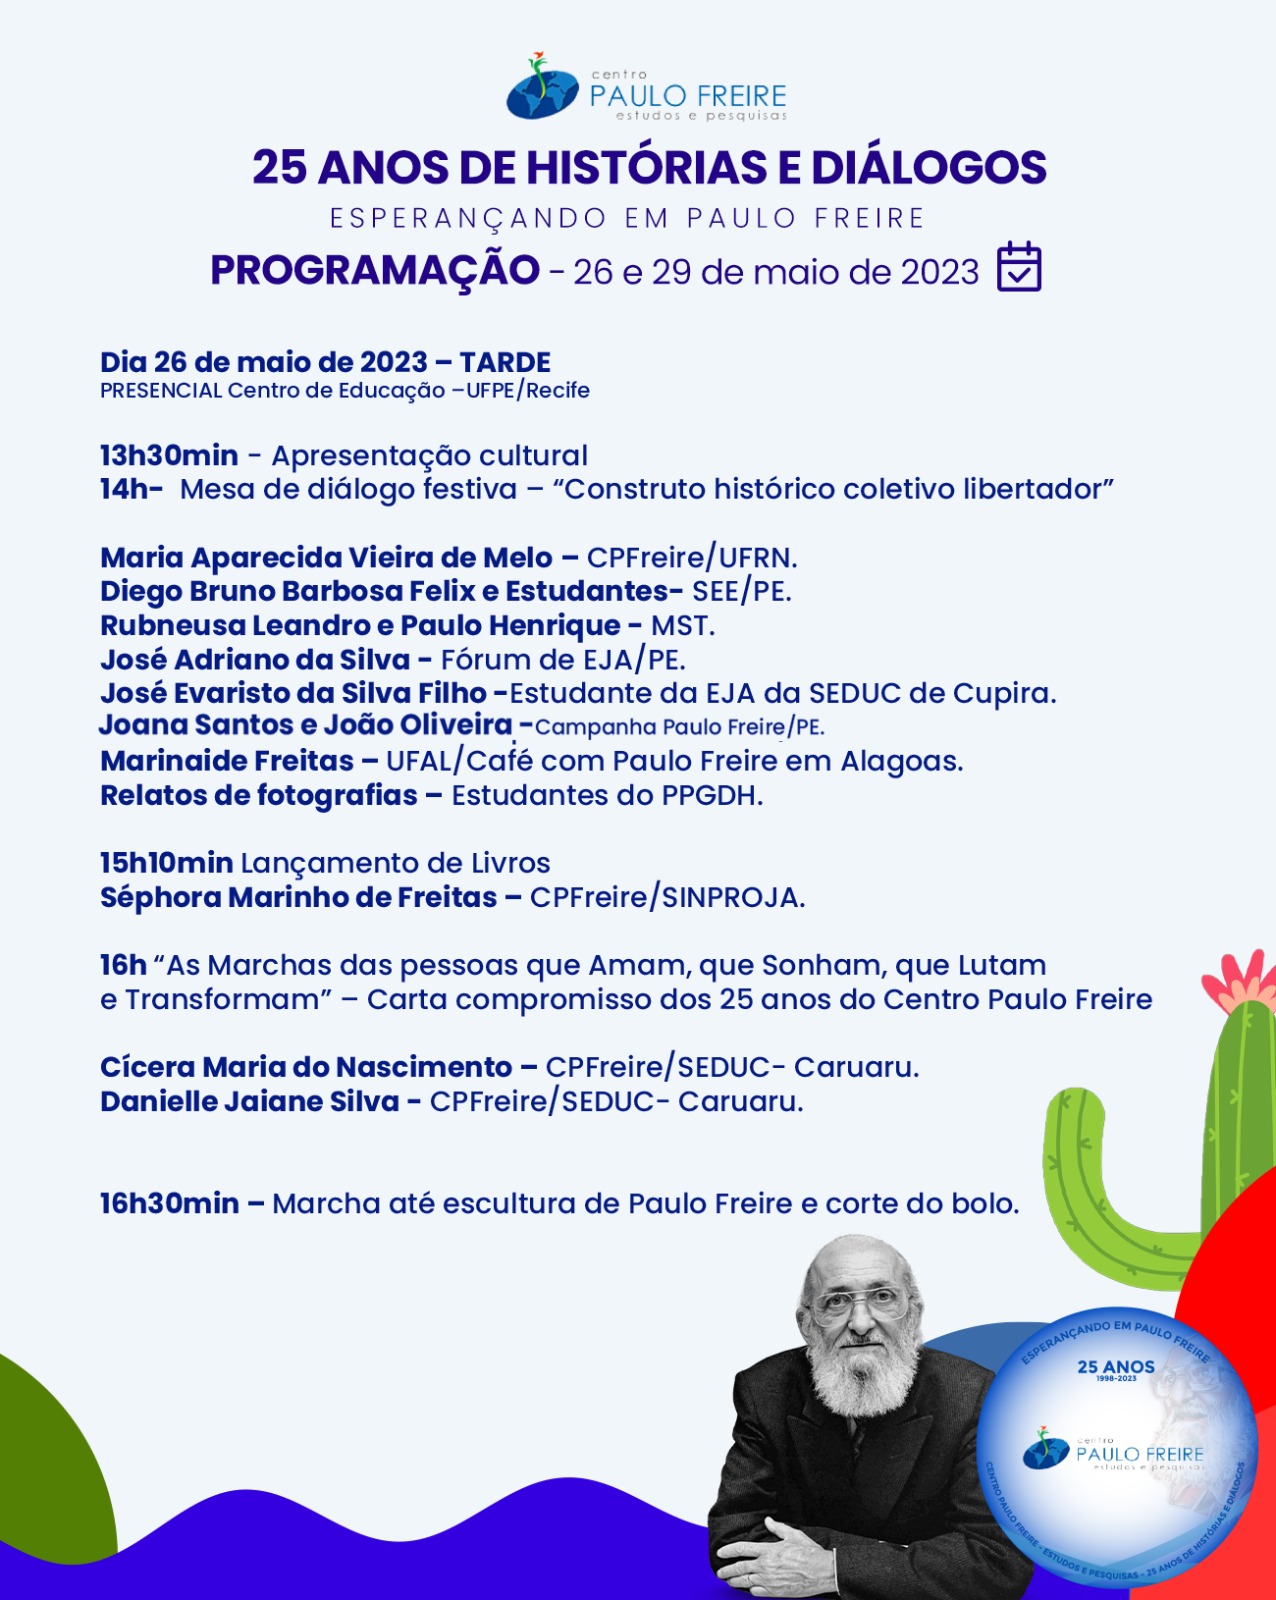 Programação da celebração dos 25 anos do Centro Paulo Freire- Estudos e Pesquisas – Dia 26/05/2023 Tarde